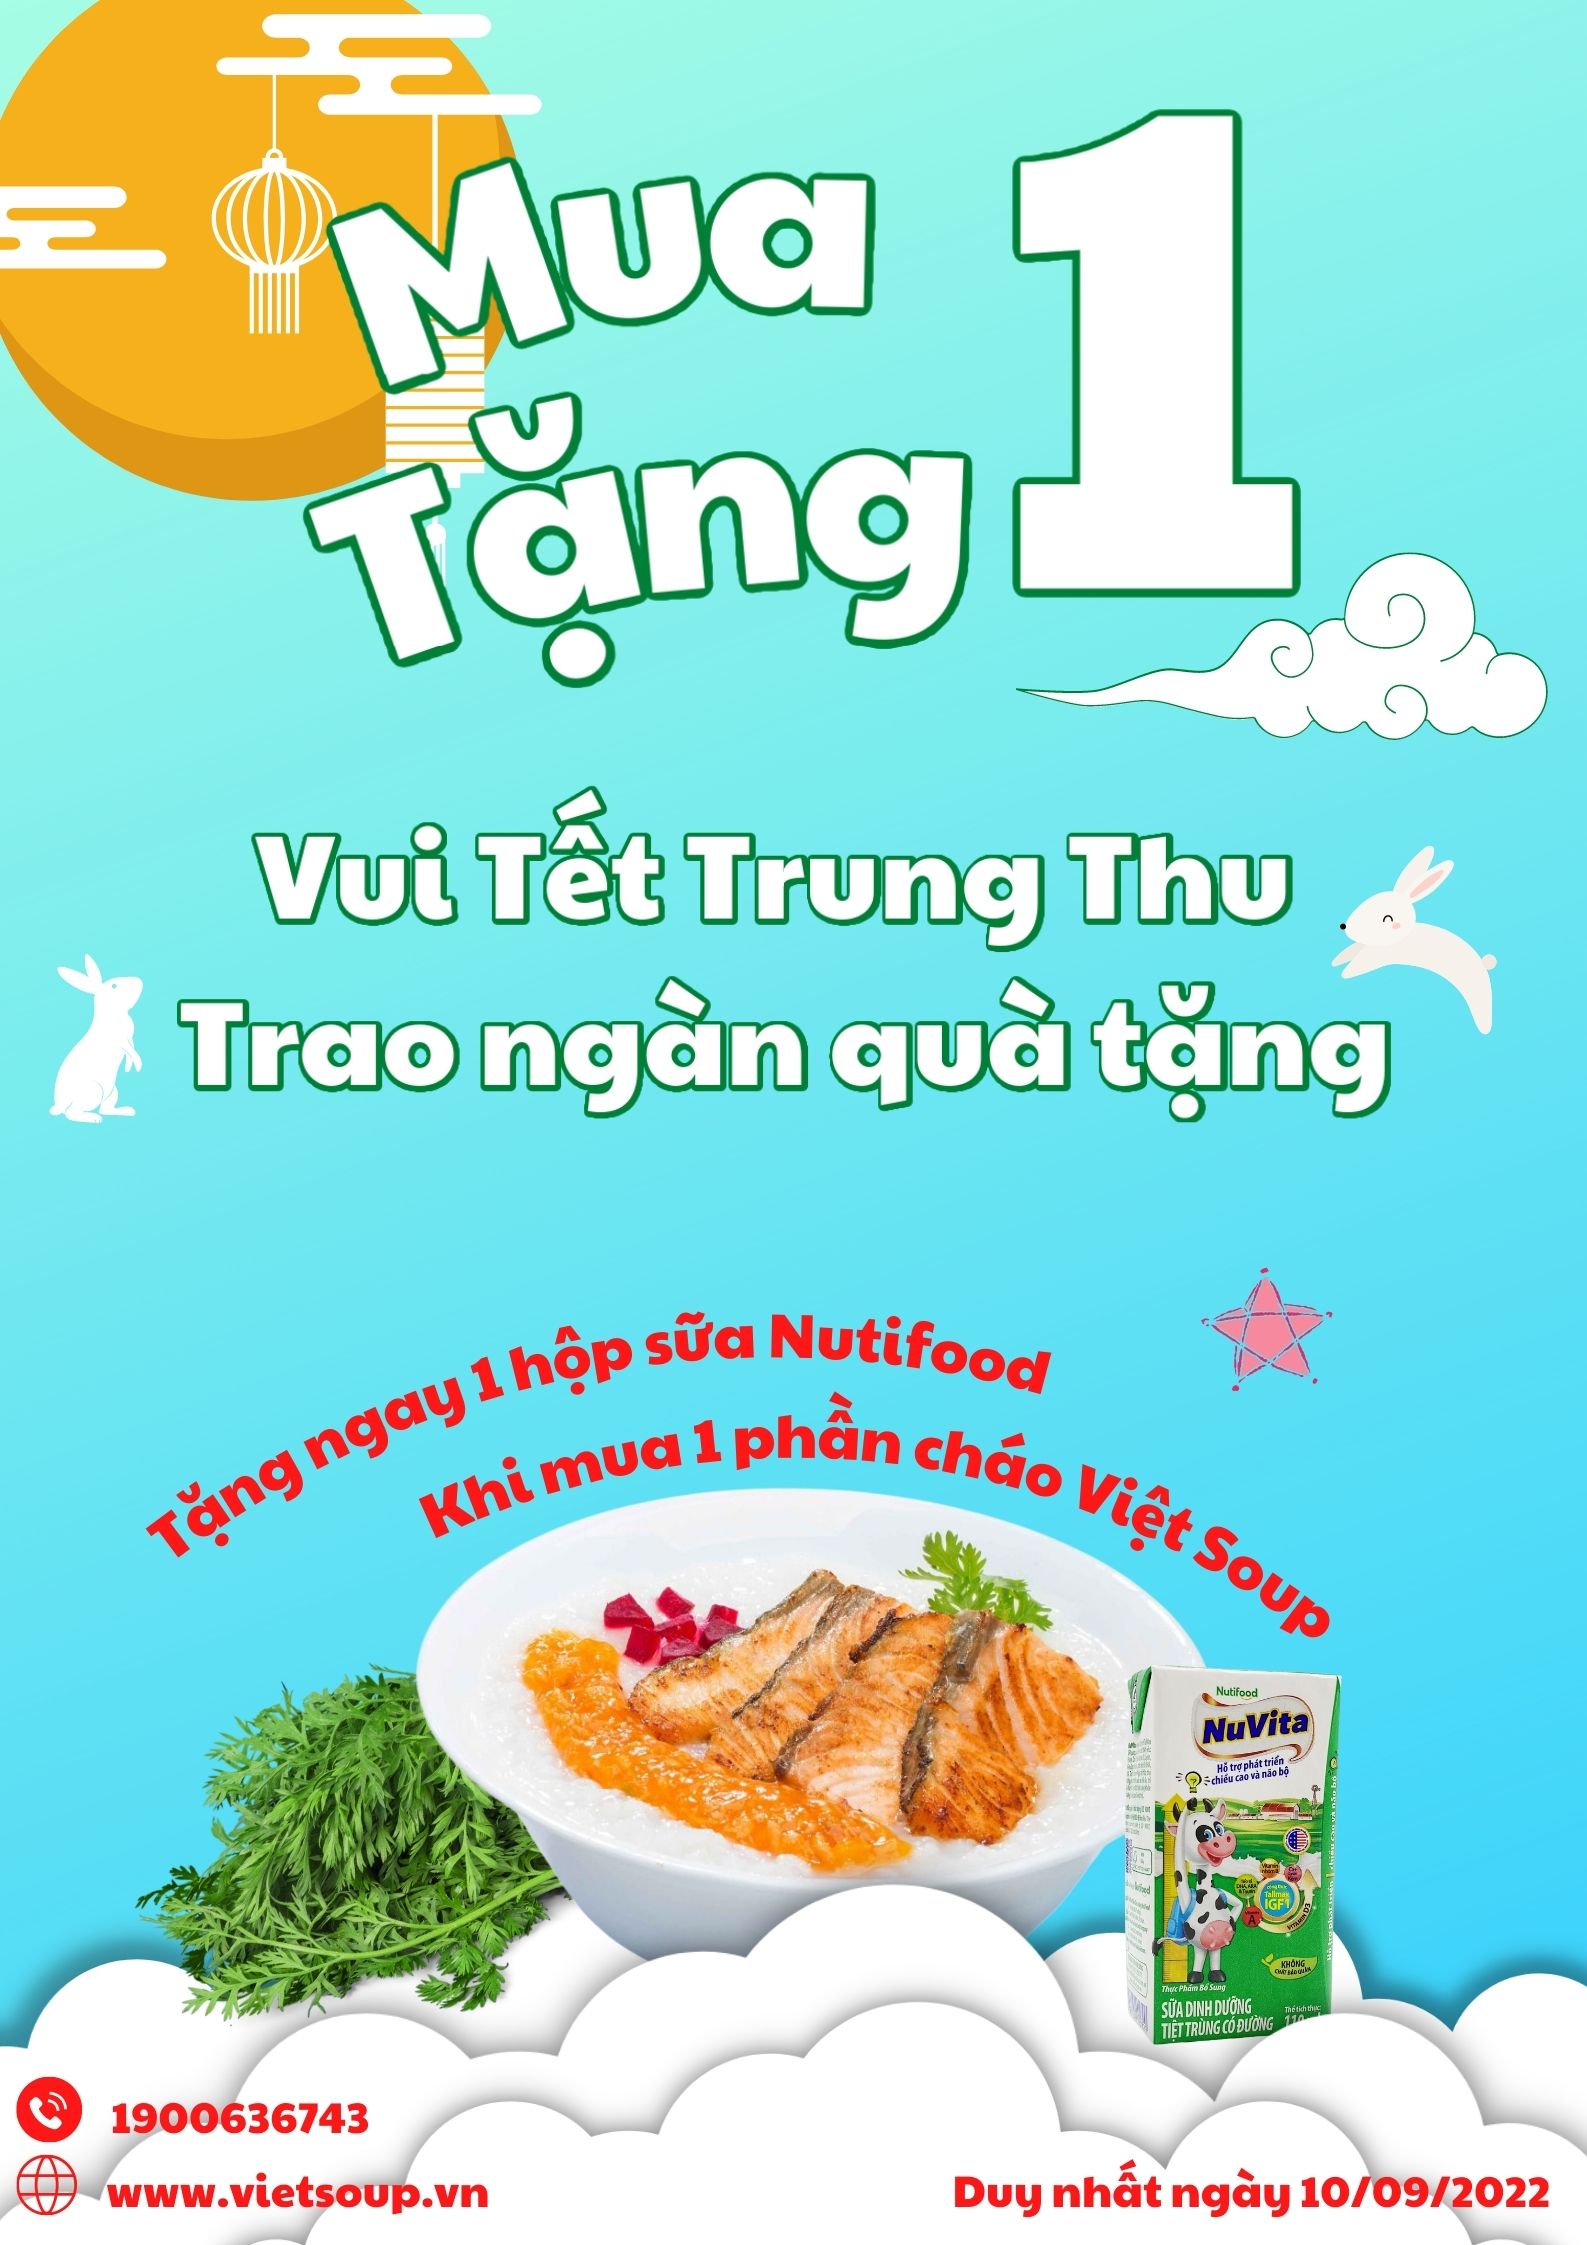 Mừng Tết Trung Thu, Việt Soup mua 1 tặng 1